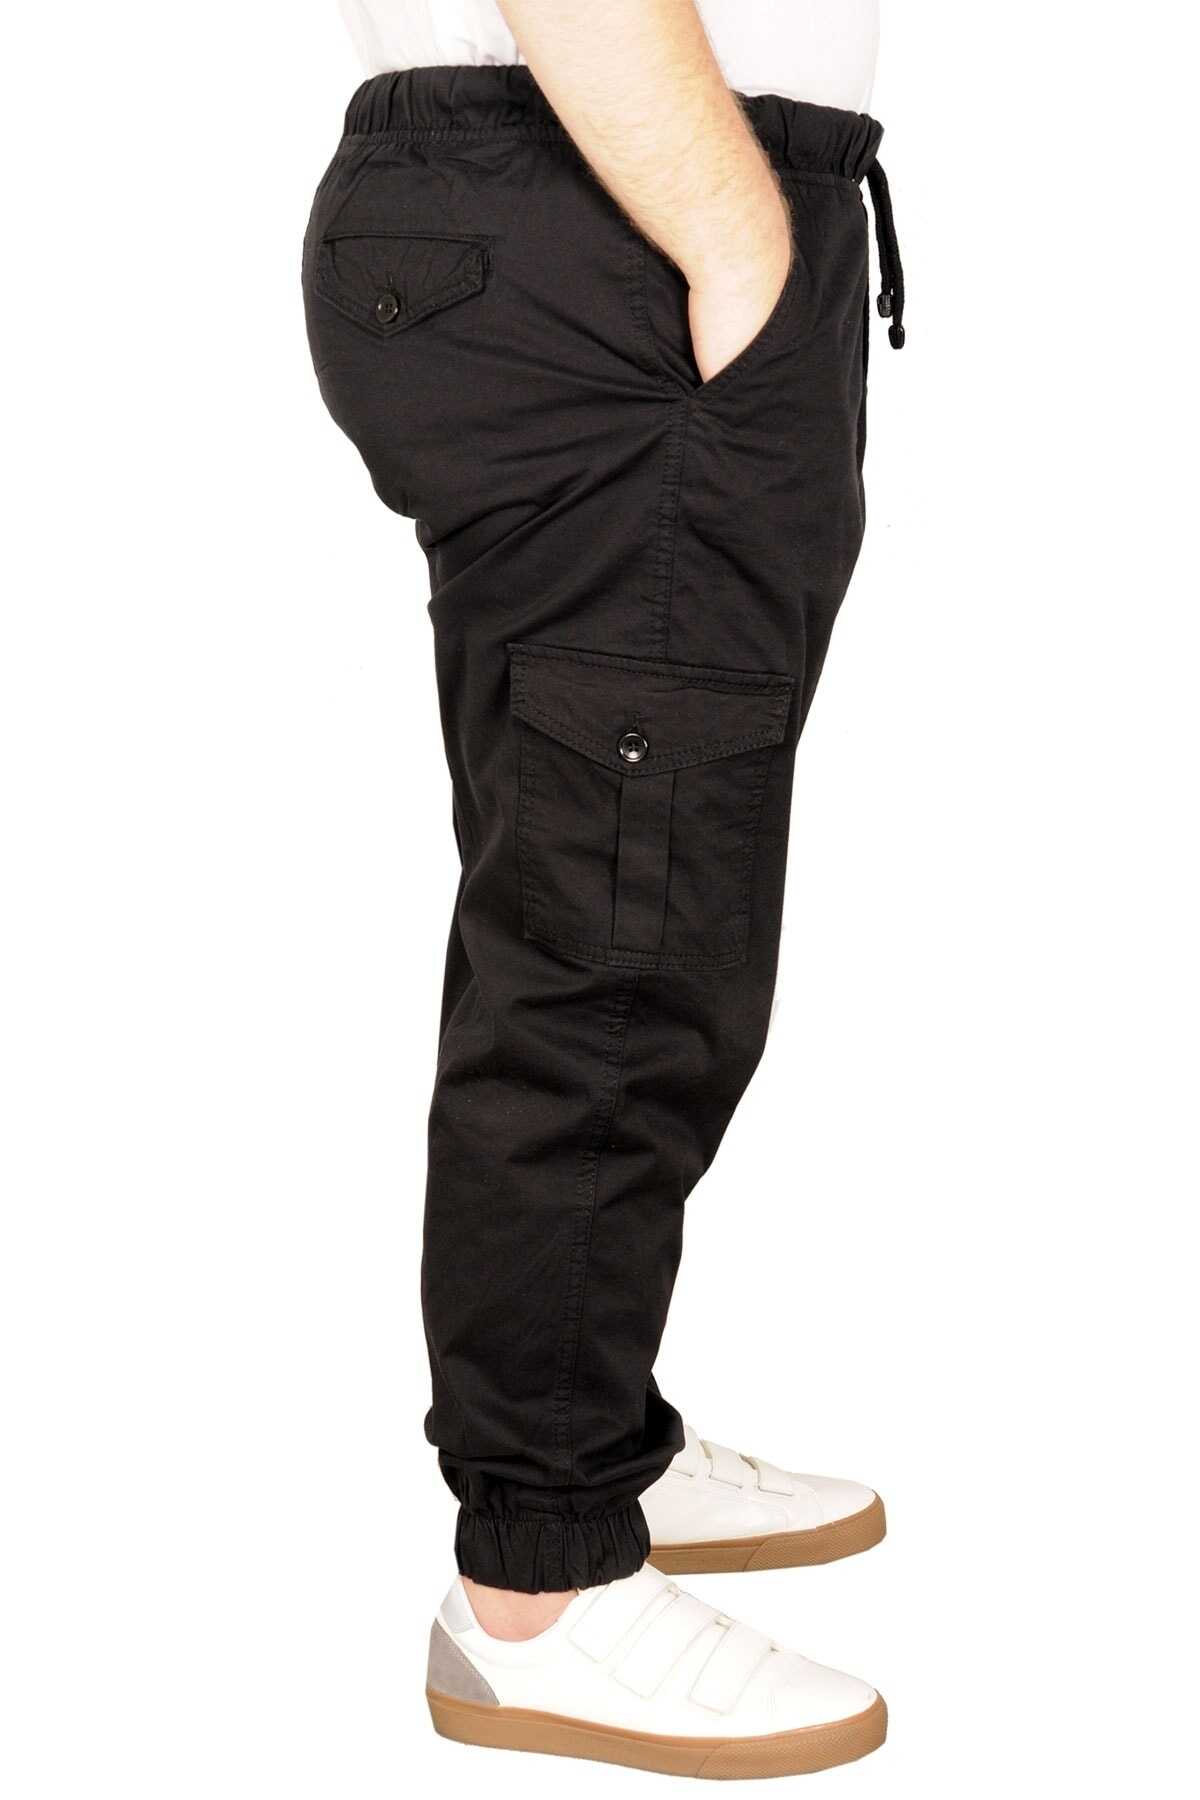 شلوار کتان سایز بزرگ دمپا گت کمر کش بندی جیب دار مشکی برند ModeXL 